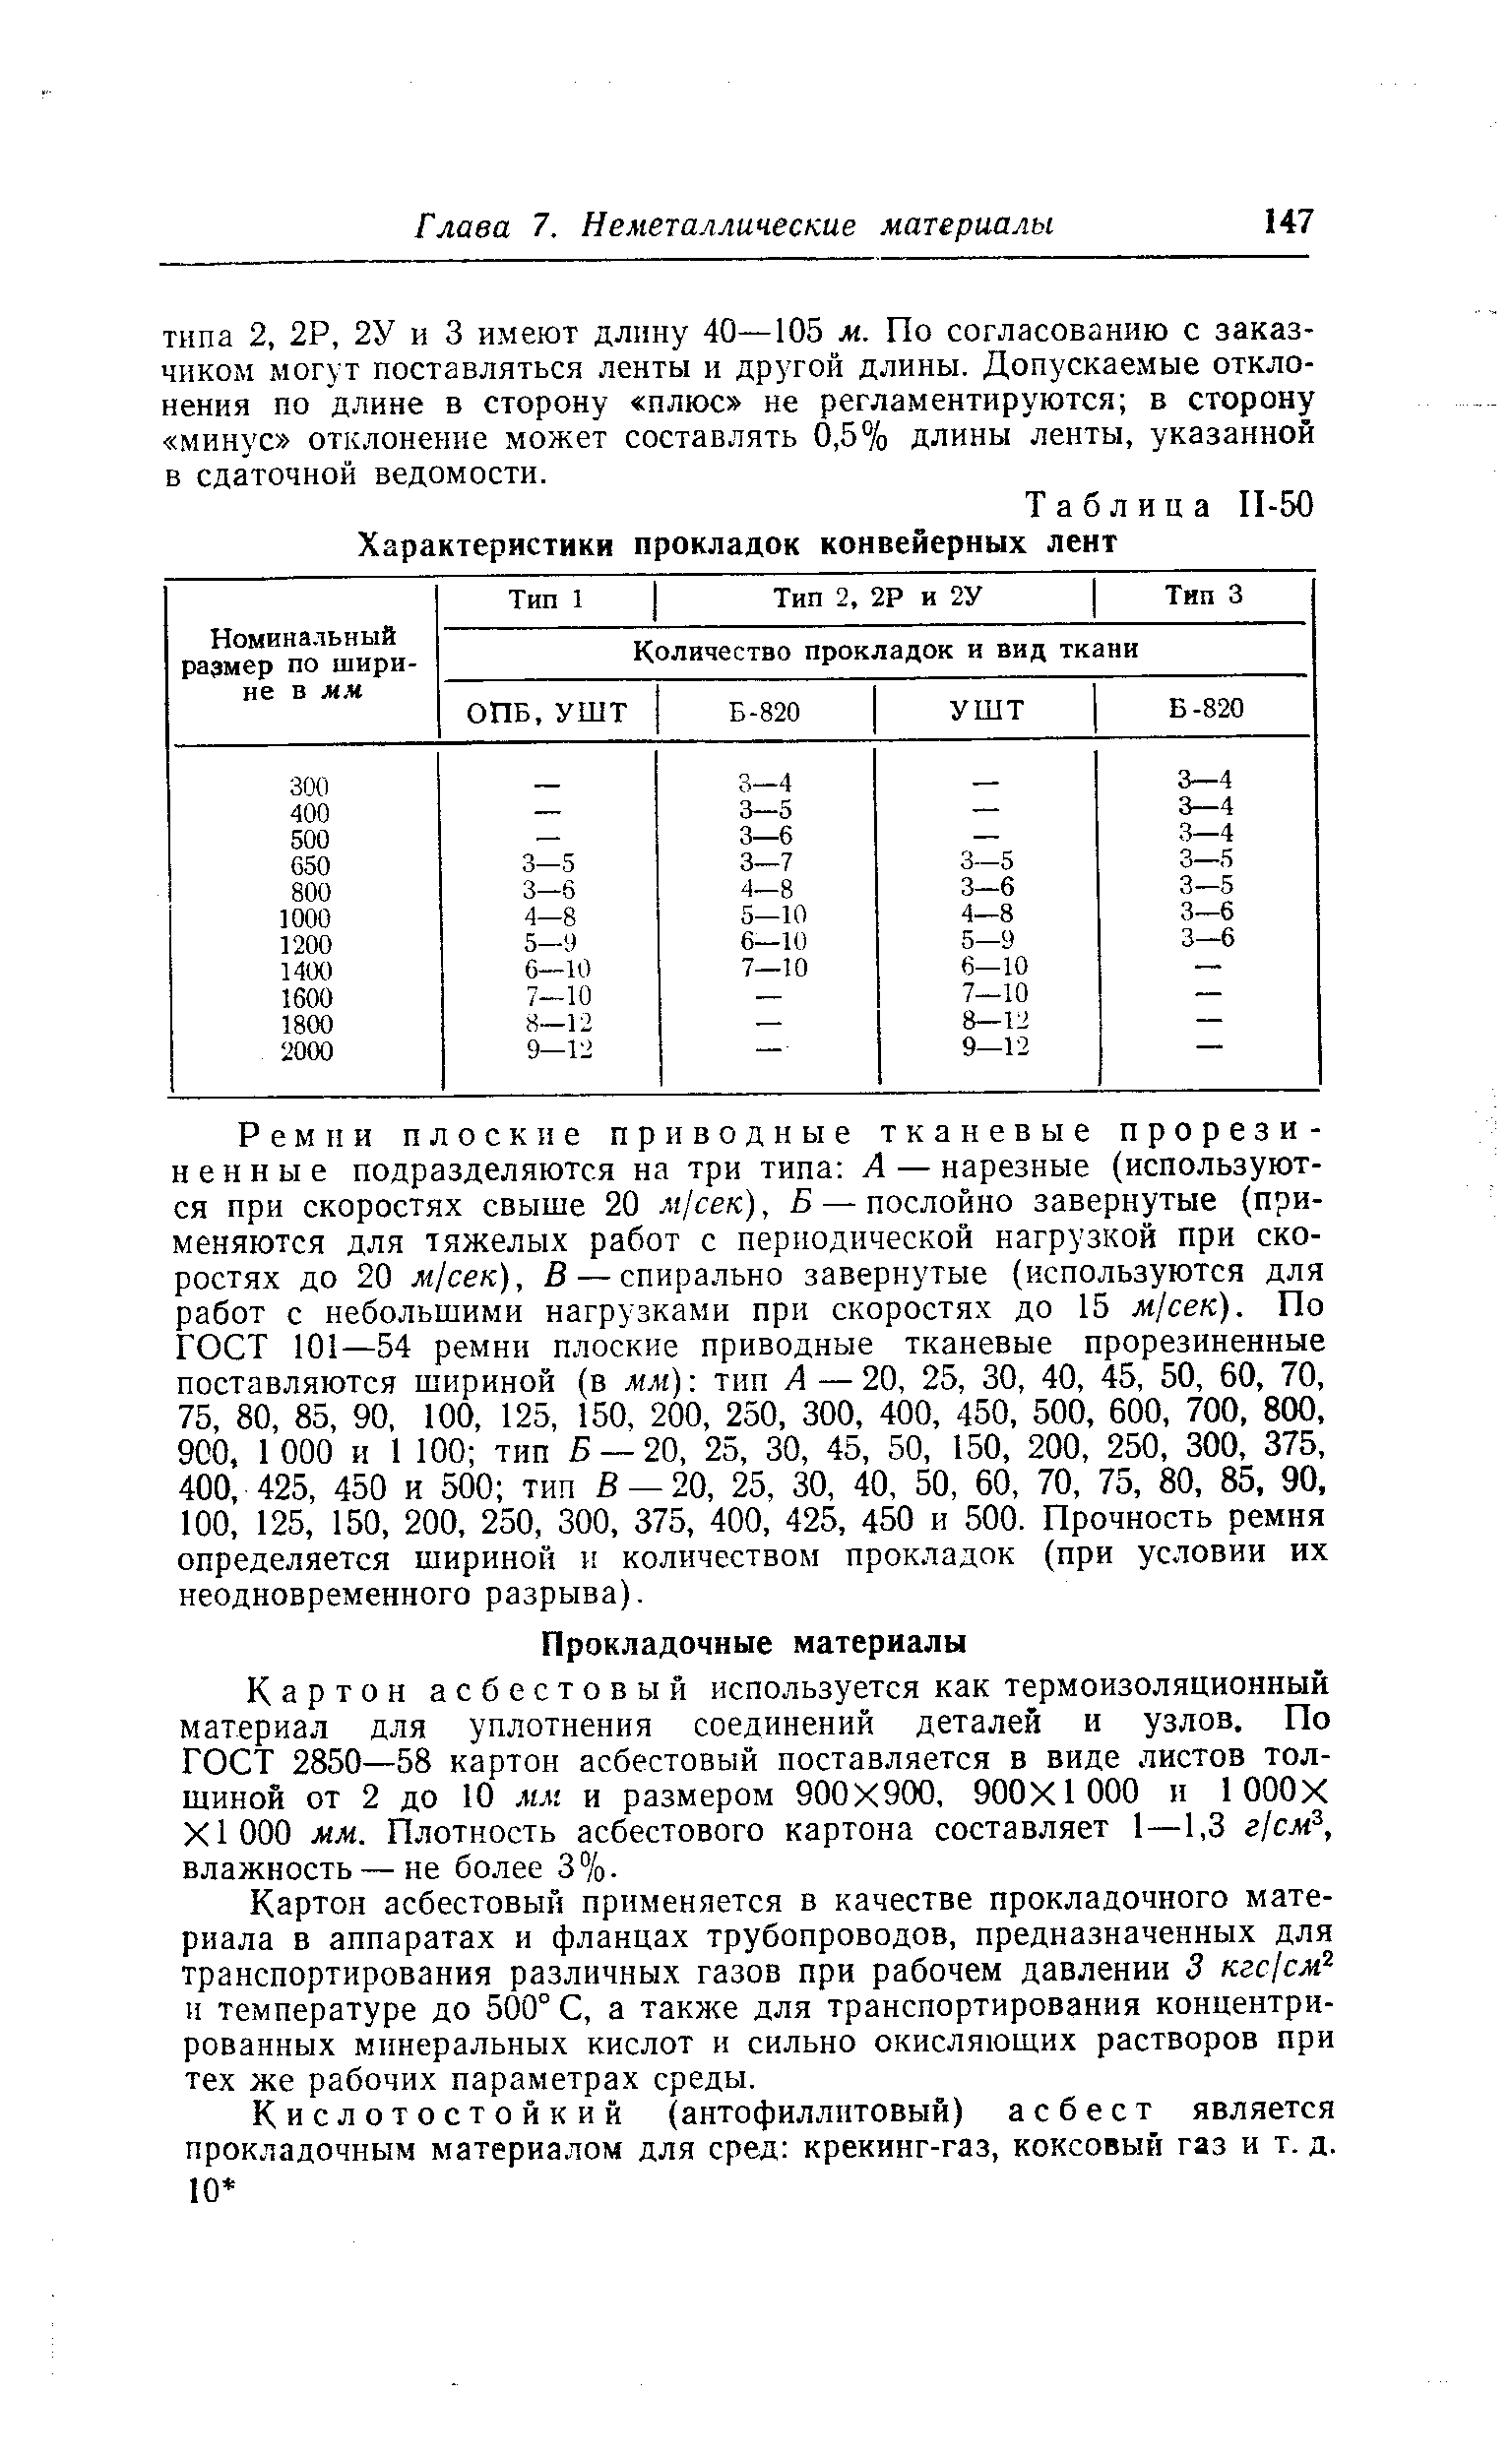 Таблица П-50 Характеристики прокладок конвейерных лент
